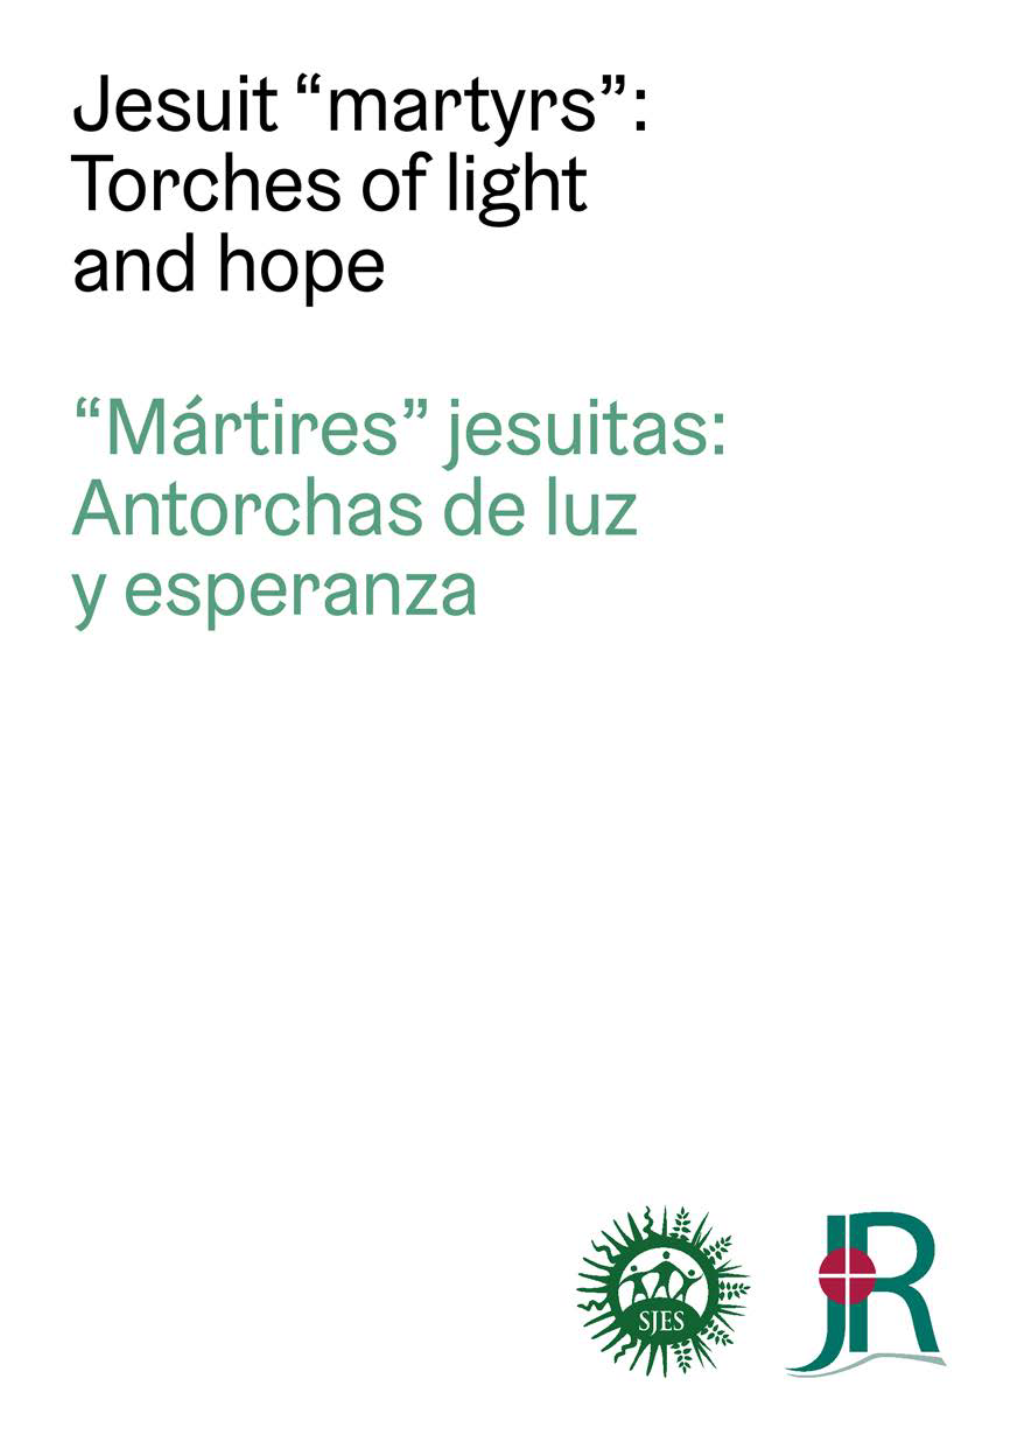 “Mártires” Jesuitas